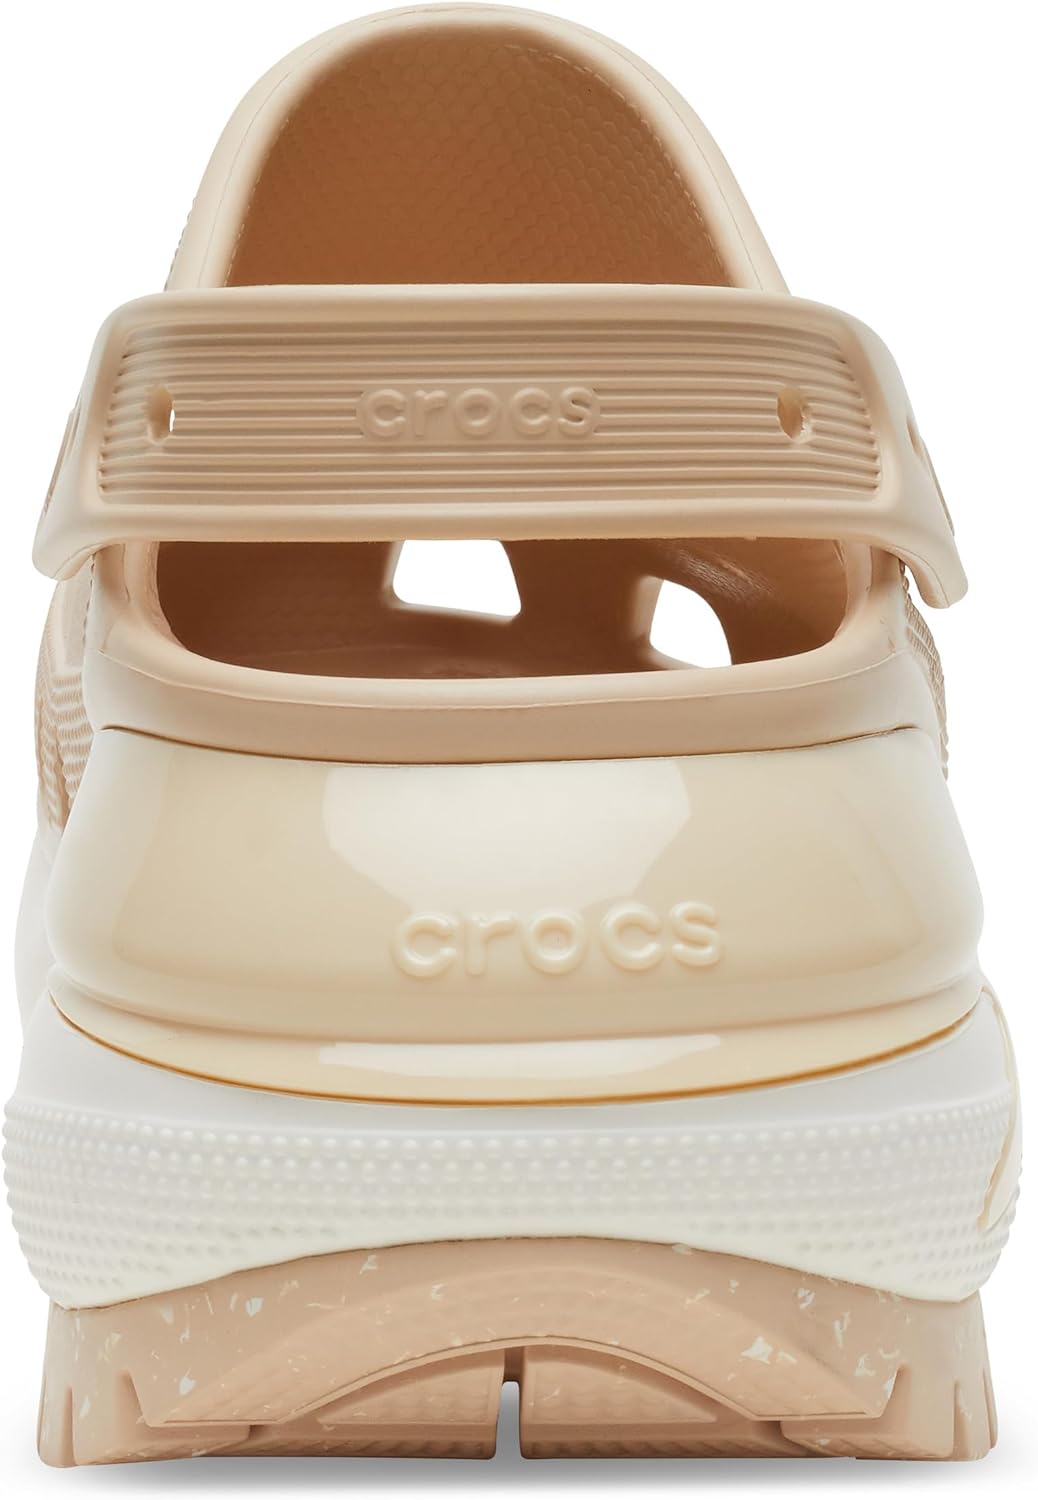 Crocs Unisex-Adult Mega Crush Clog